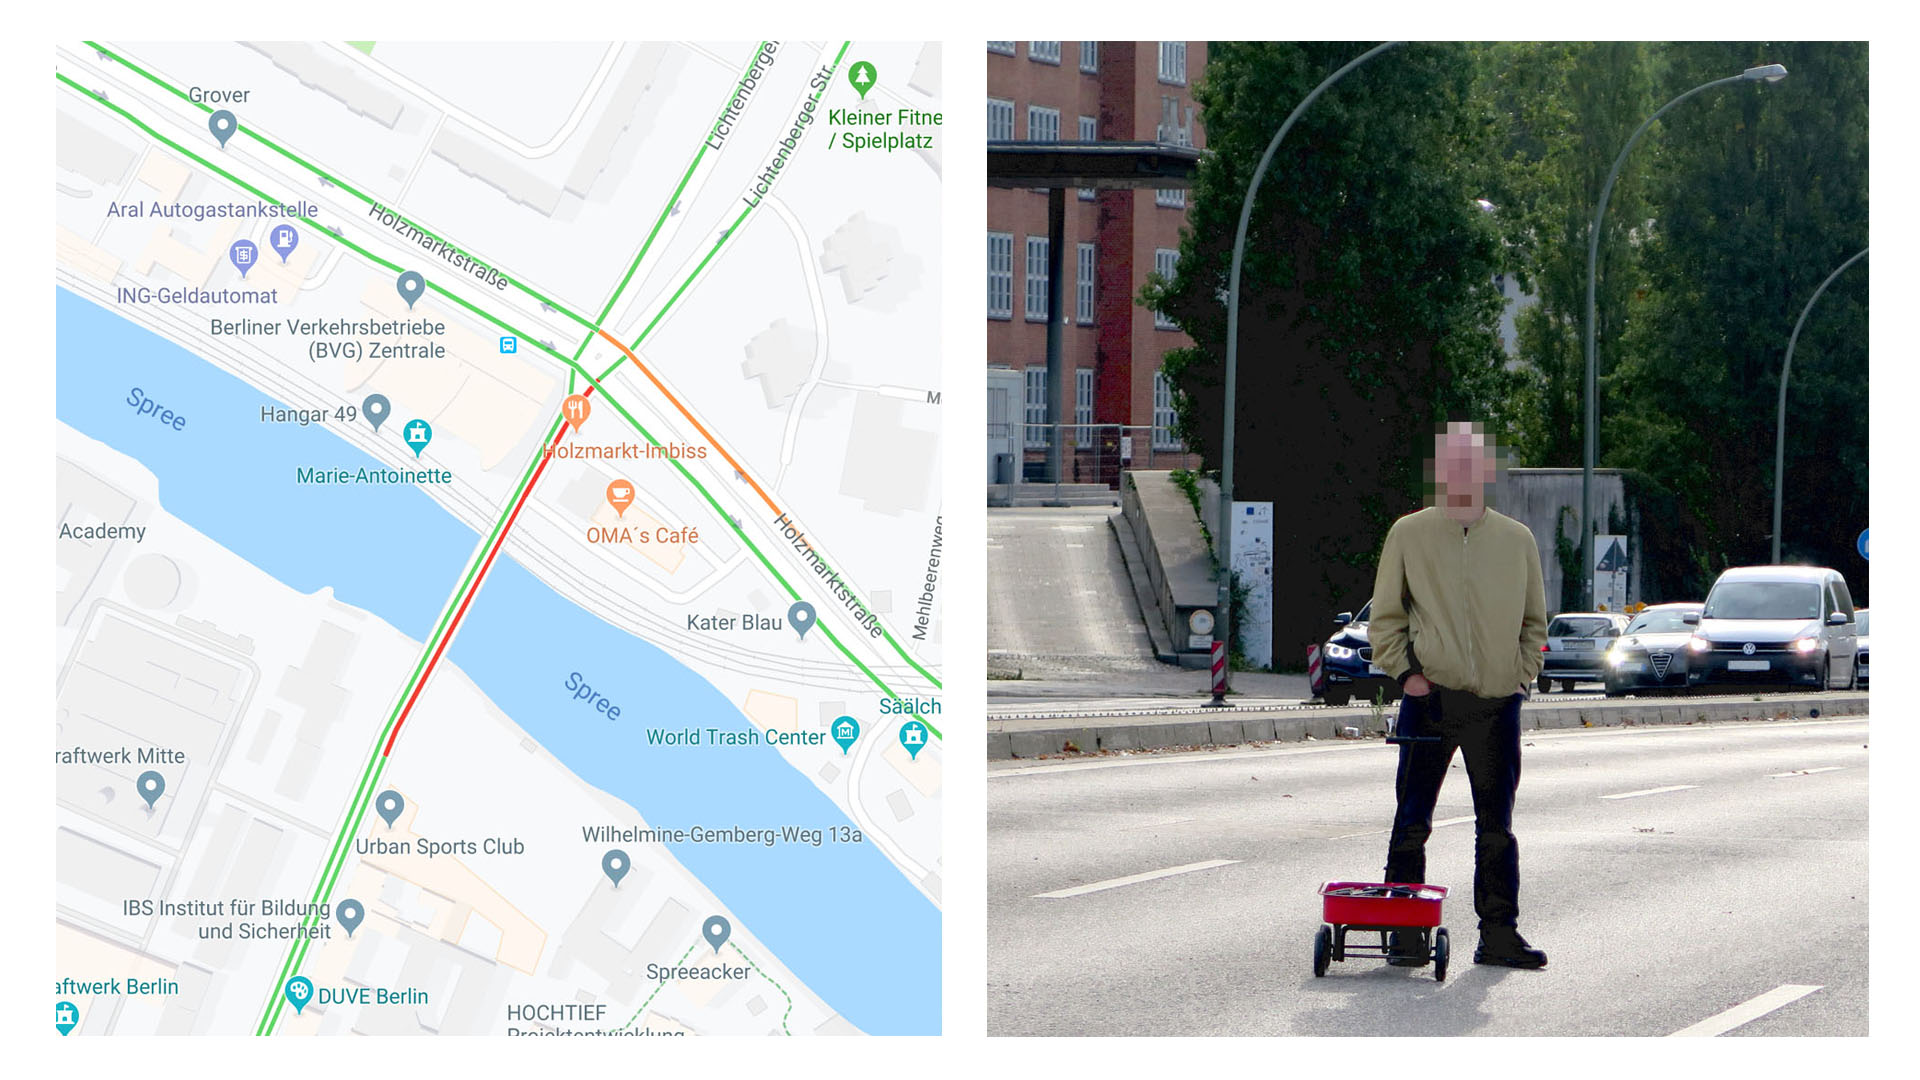 Гугл карты человечек ходить по улице. Ходить по карте. Google Maps трафик. Как создавались гугл карты. Смешные улицы в гугл картах.